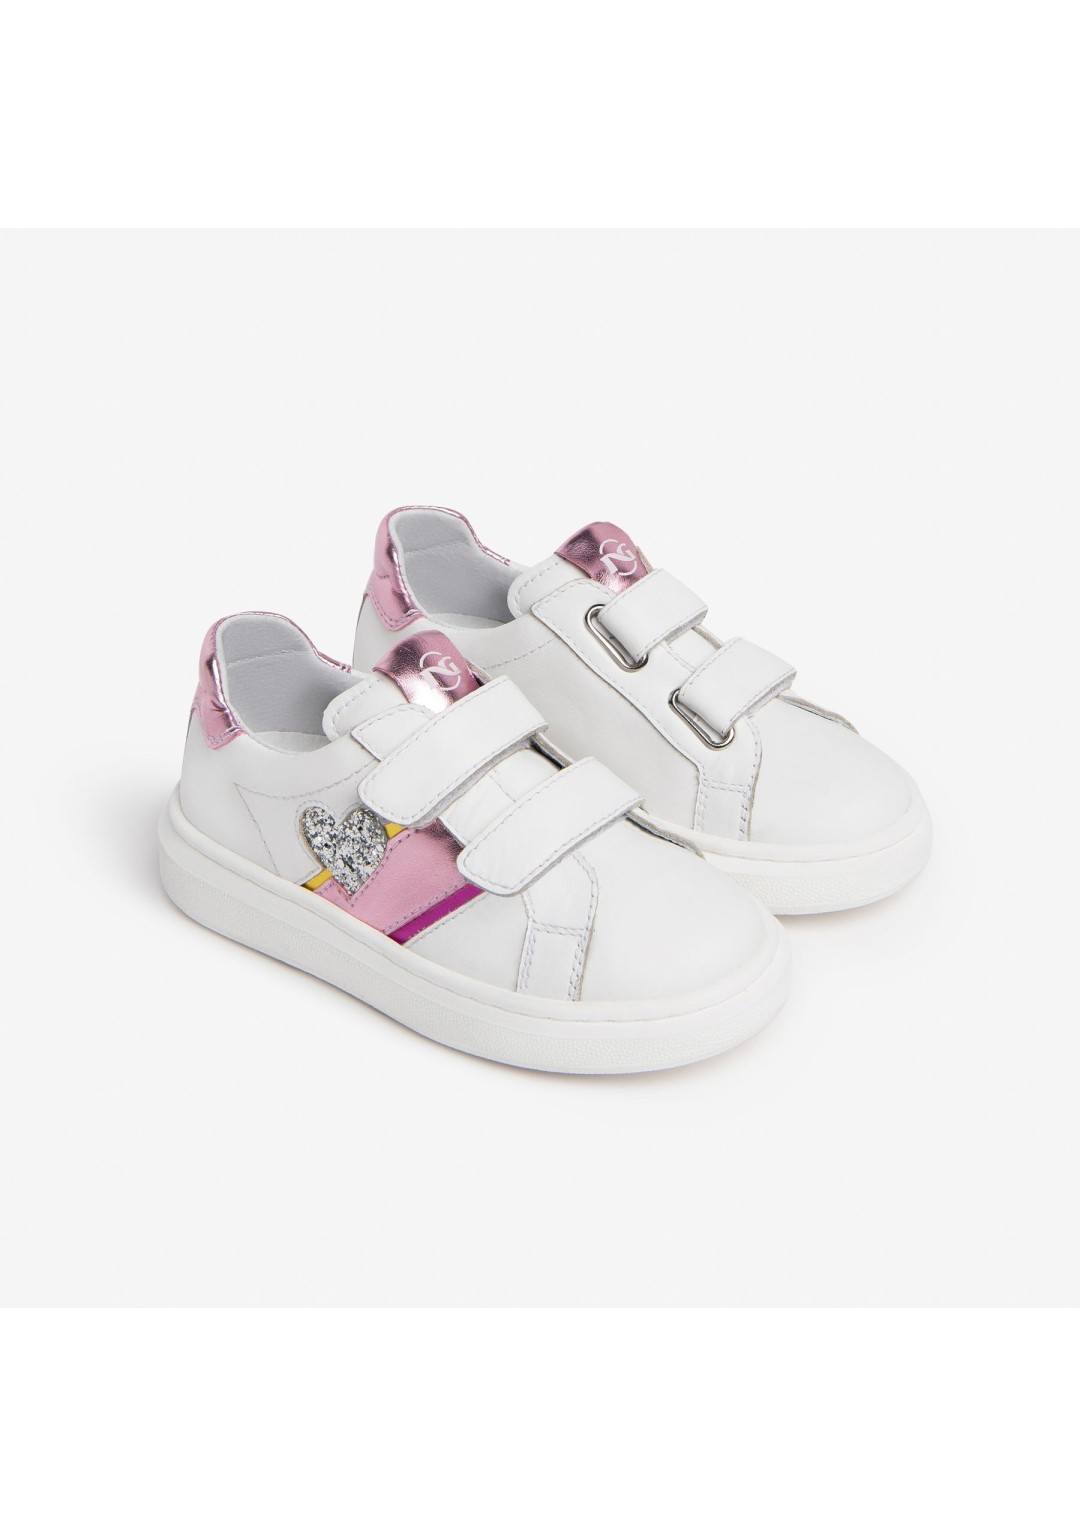 NEROGIARDINI - Sneakers Cuore - Bambine e ragazze - 374F